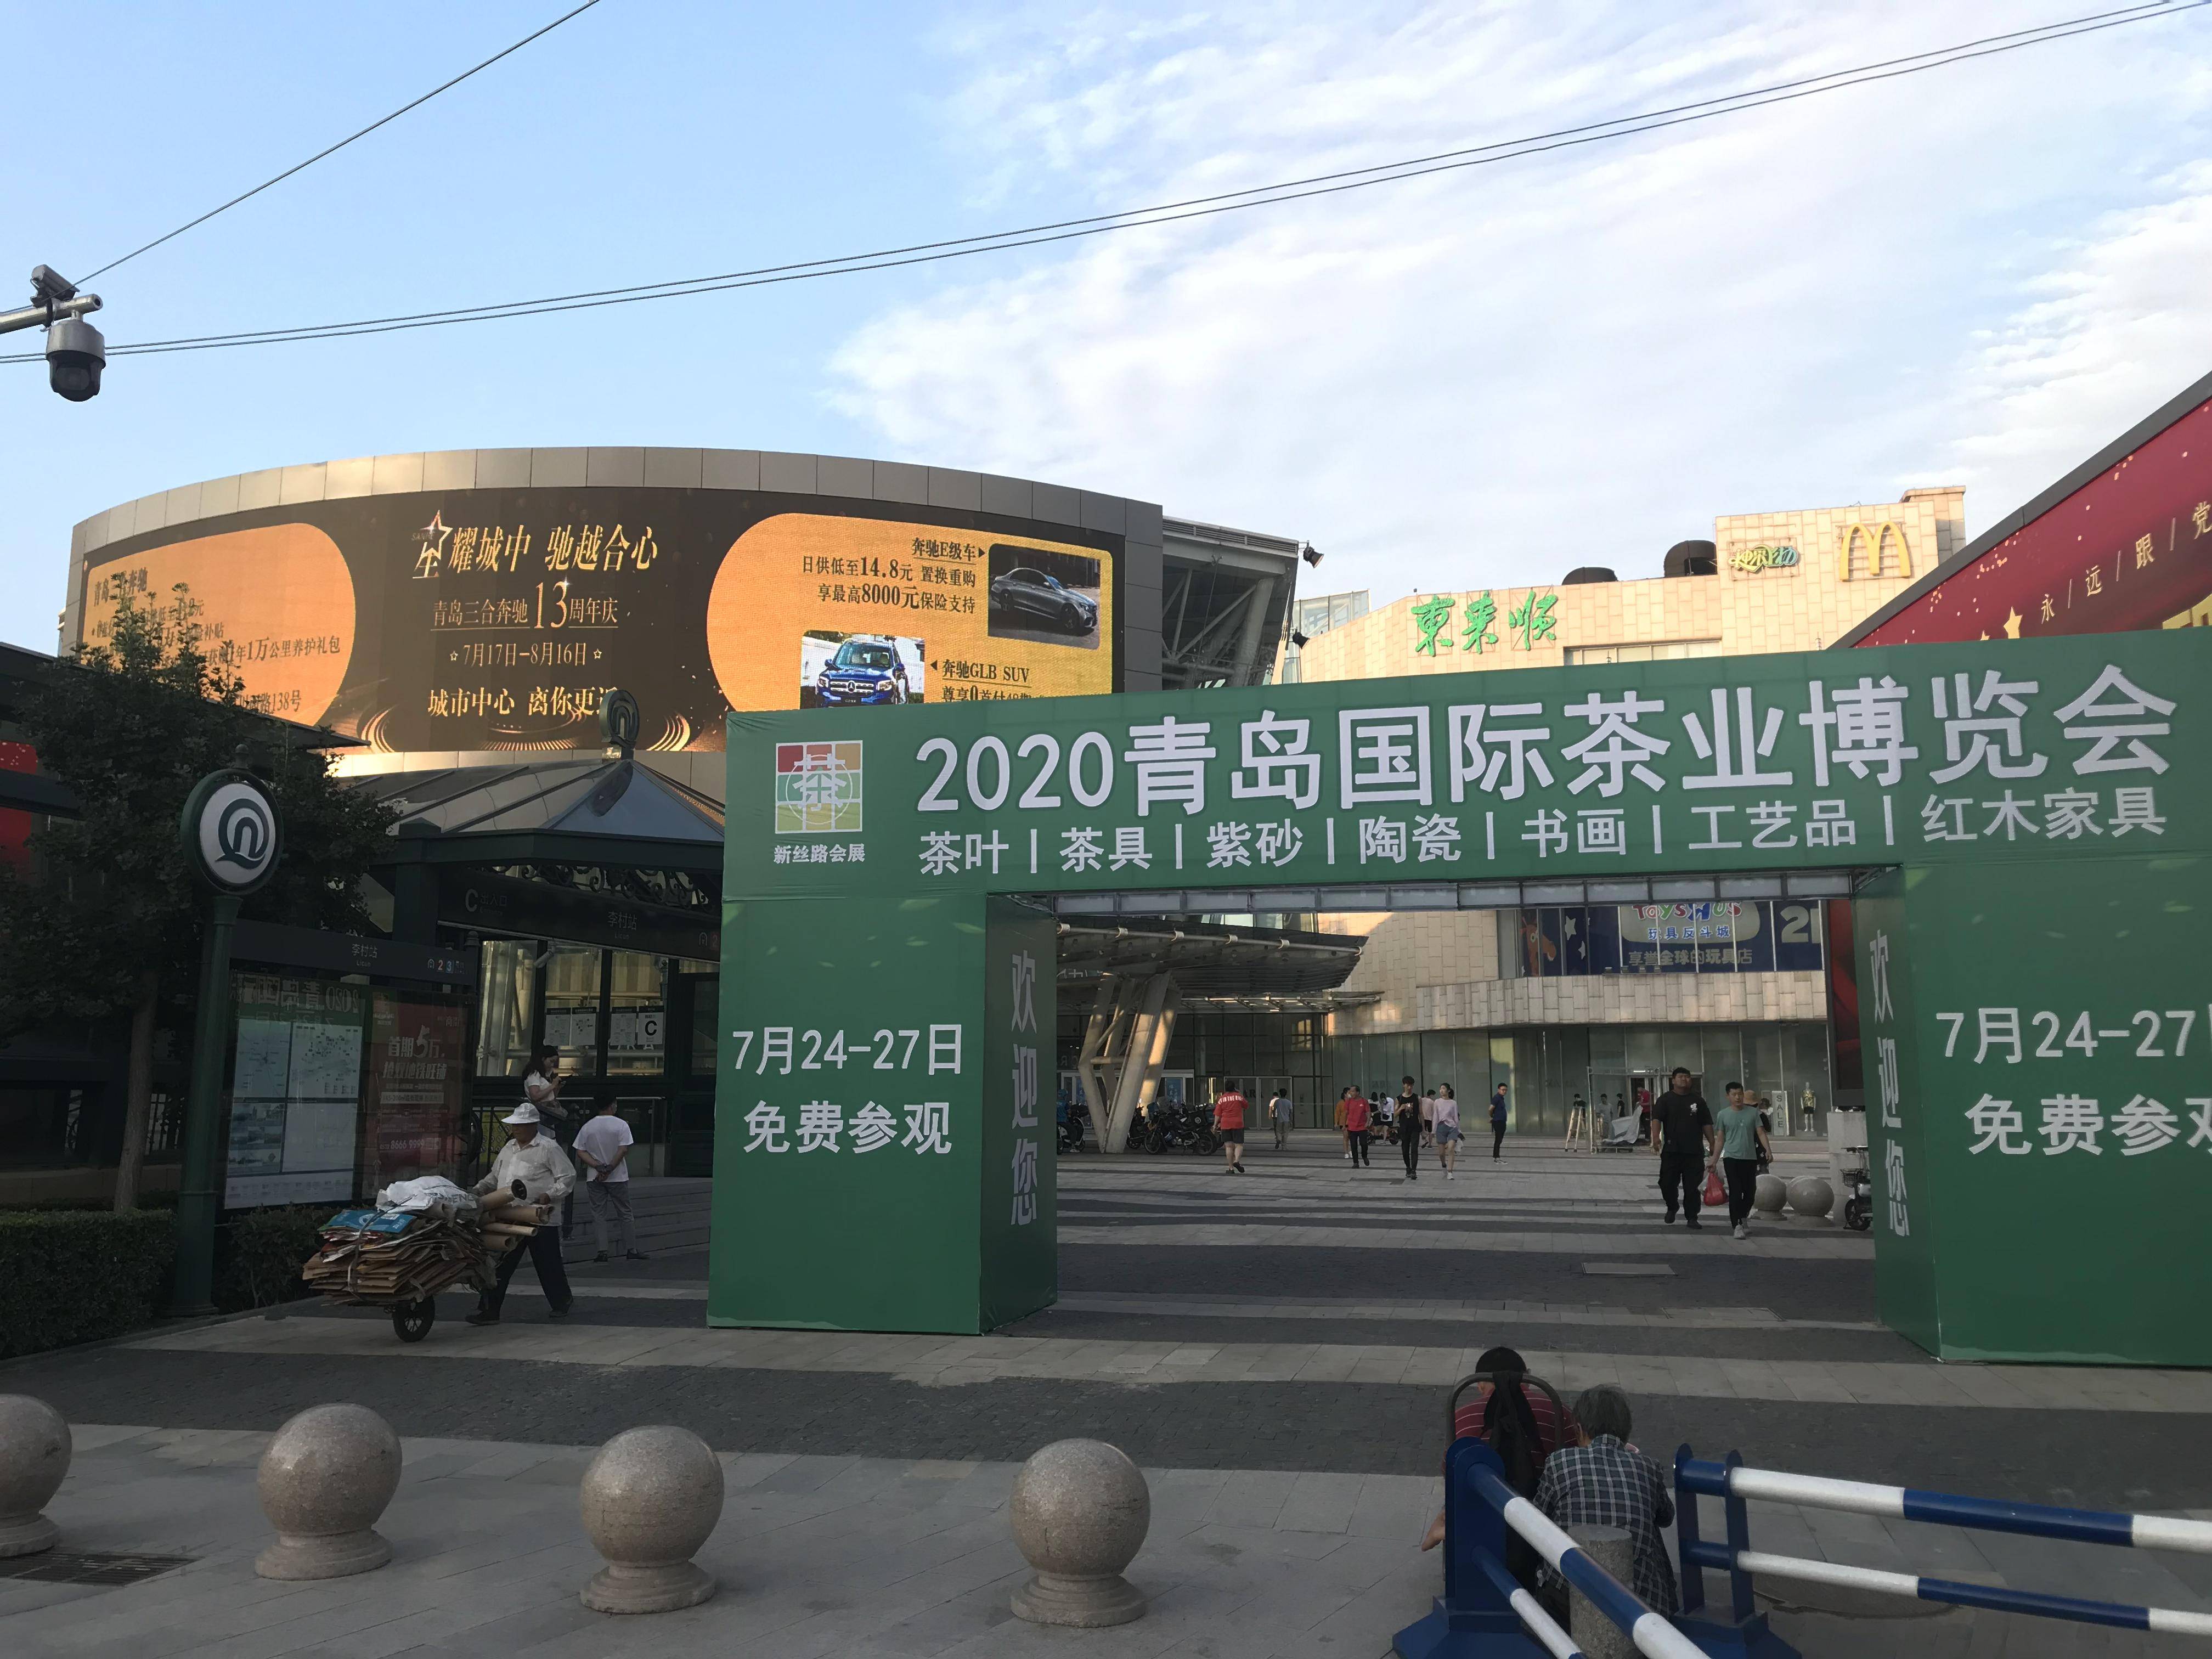 2021潍坊国际茶产业博览会暨紫砂、陶瓷、茶具用品展-活动大叔方案库